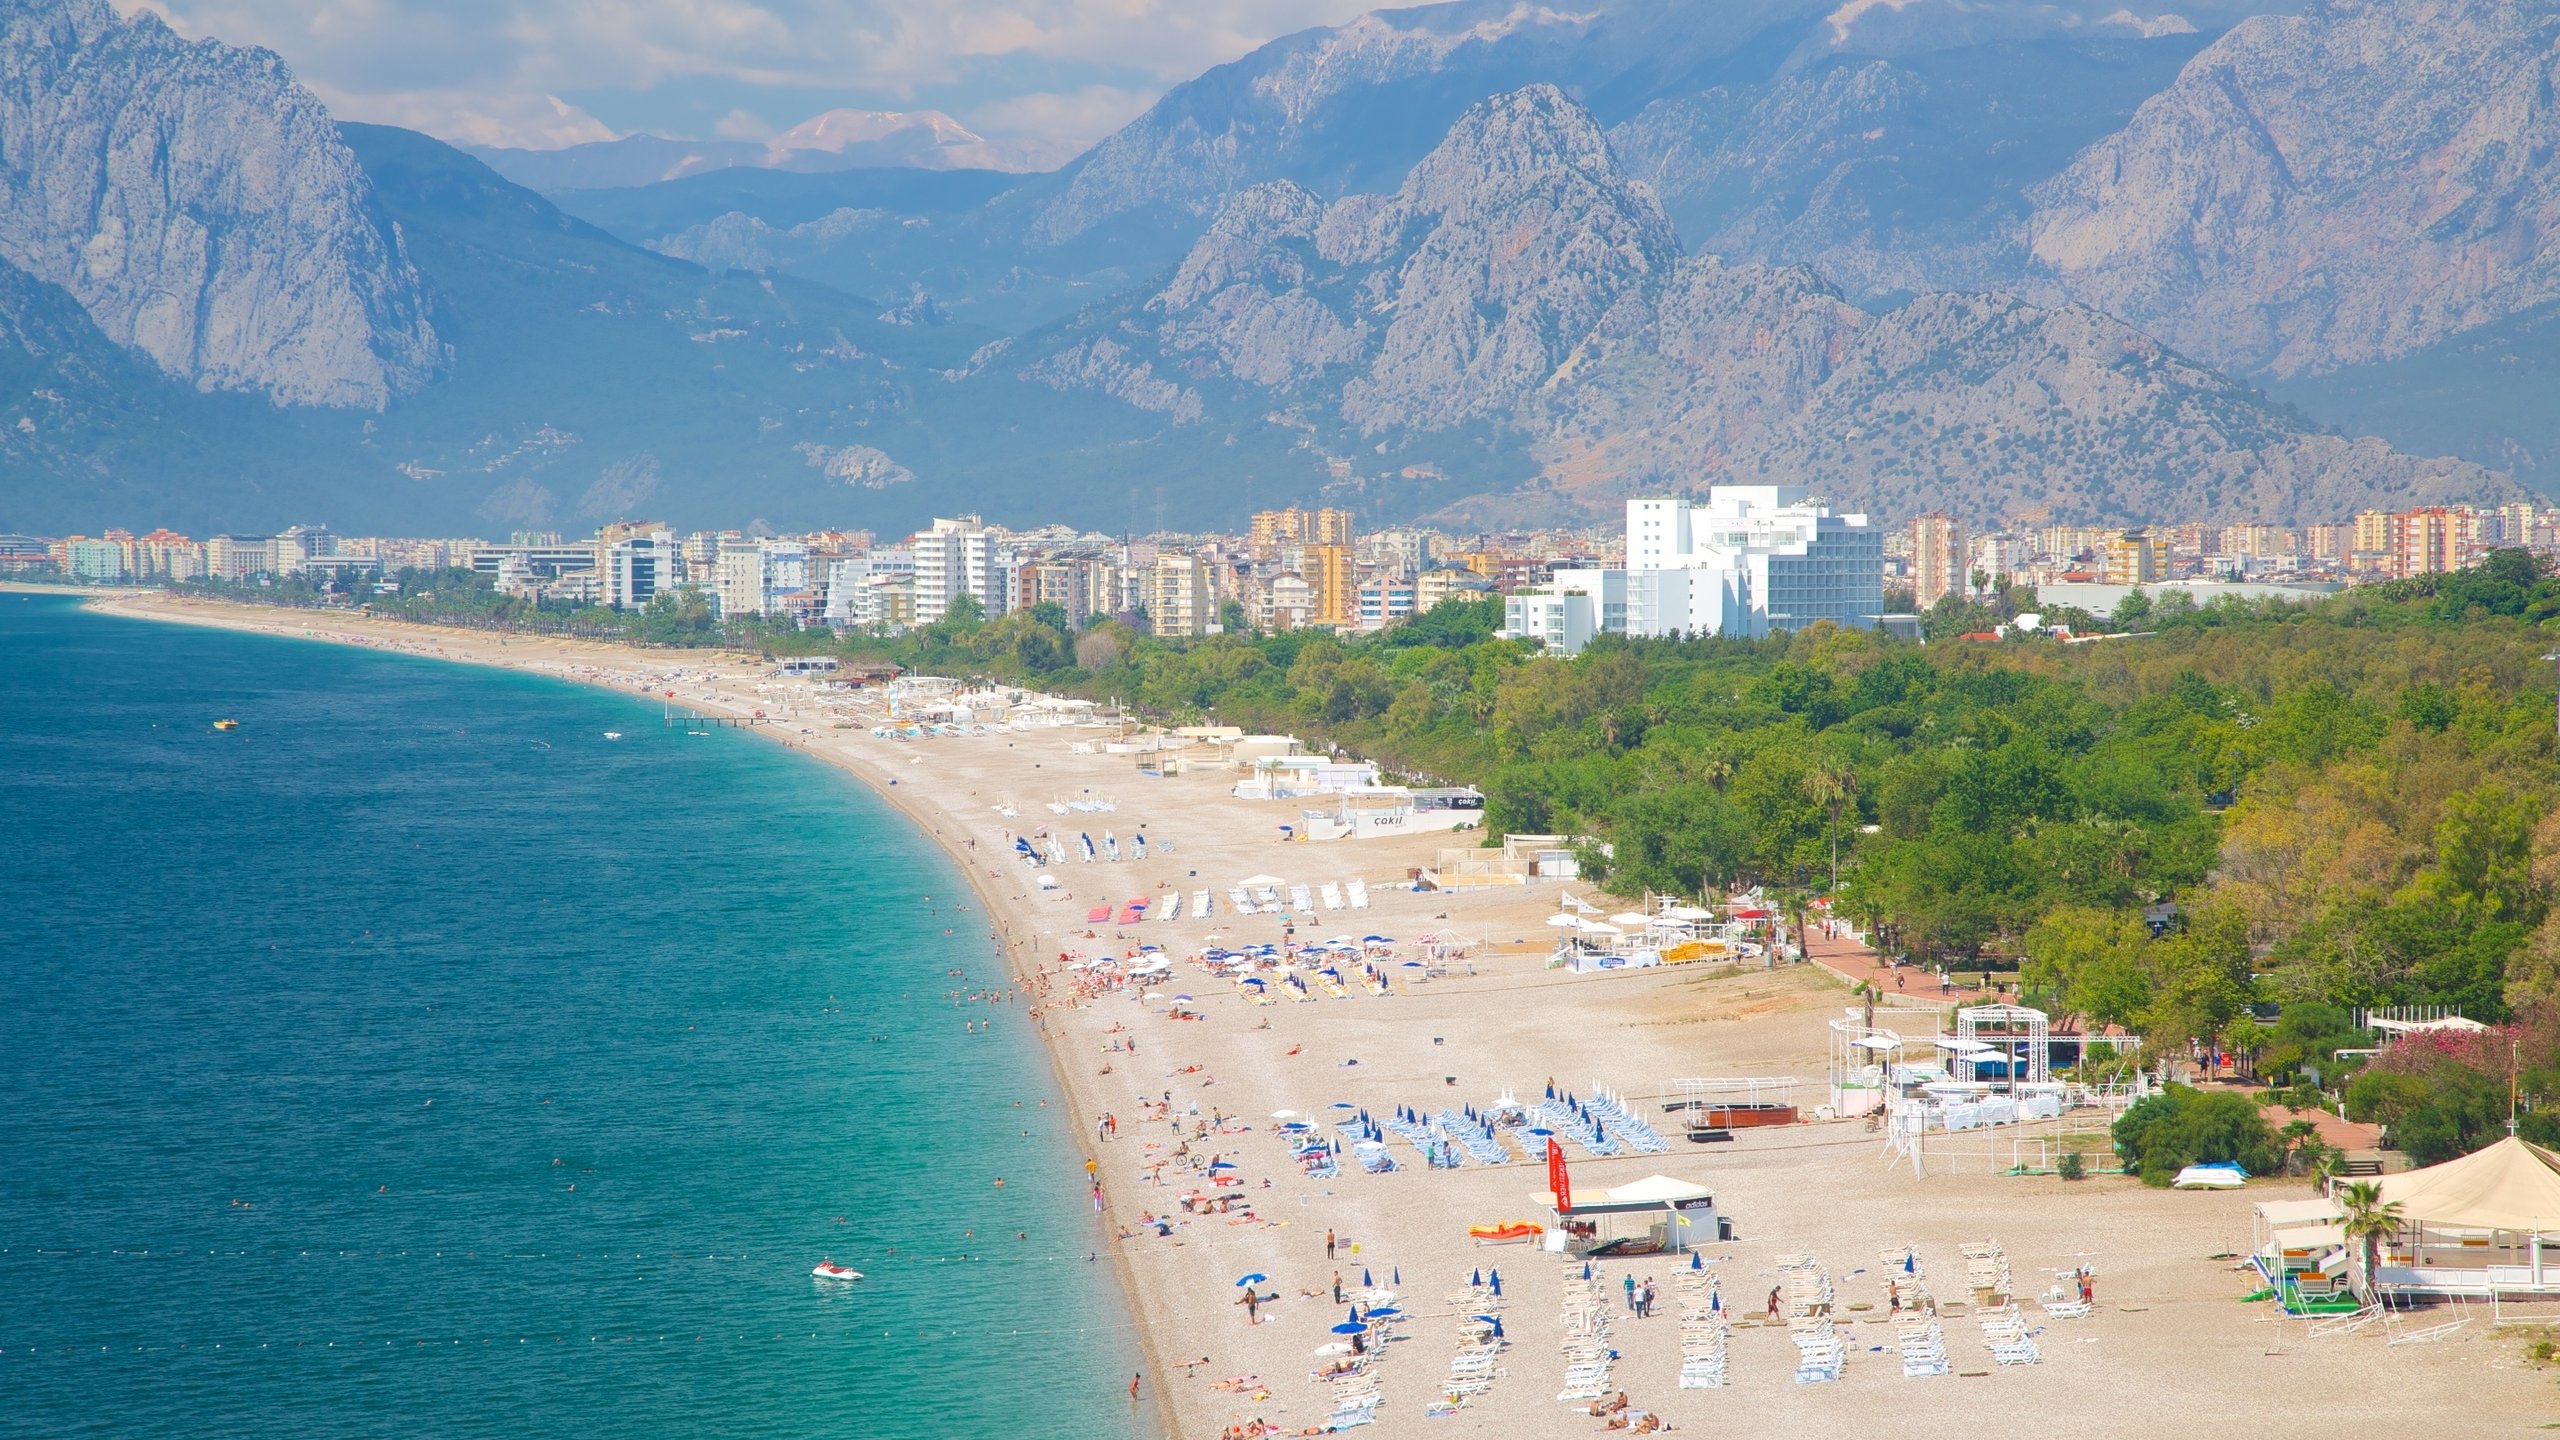 تقع أرخص الفنادق في أنطاليا جنوبي تركيا في مناطق أقل شعبية وليست قريبة من مركز الولاية